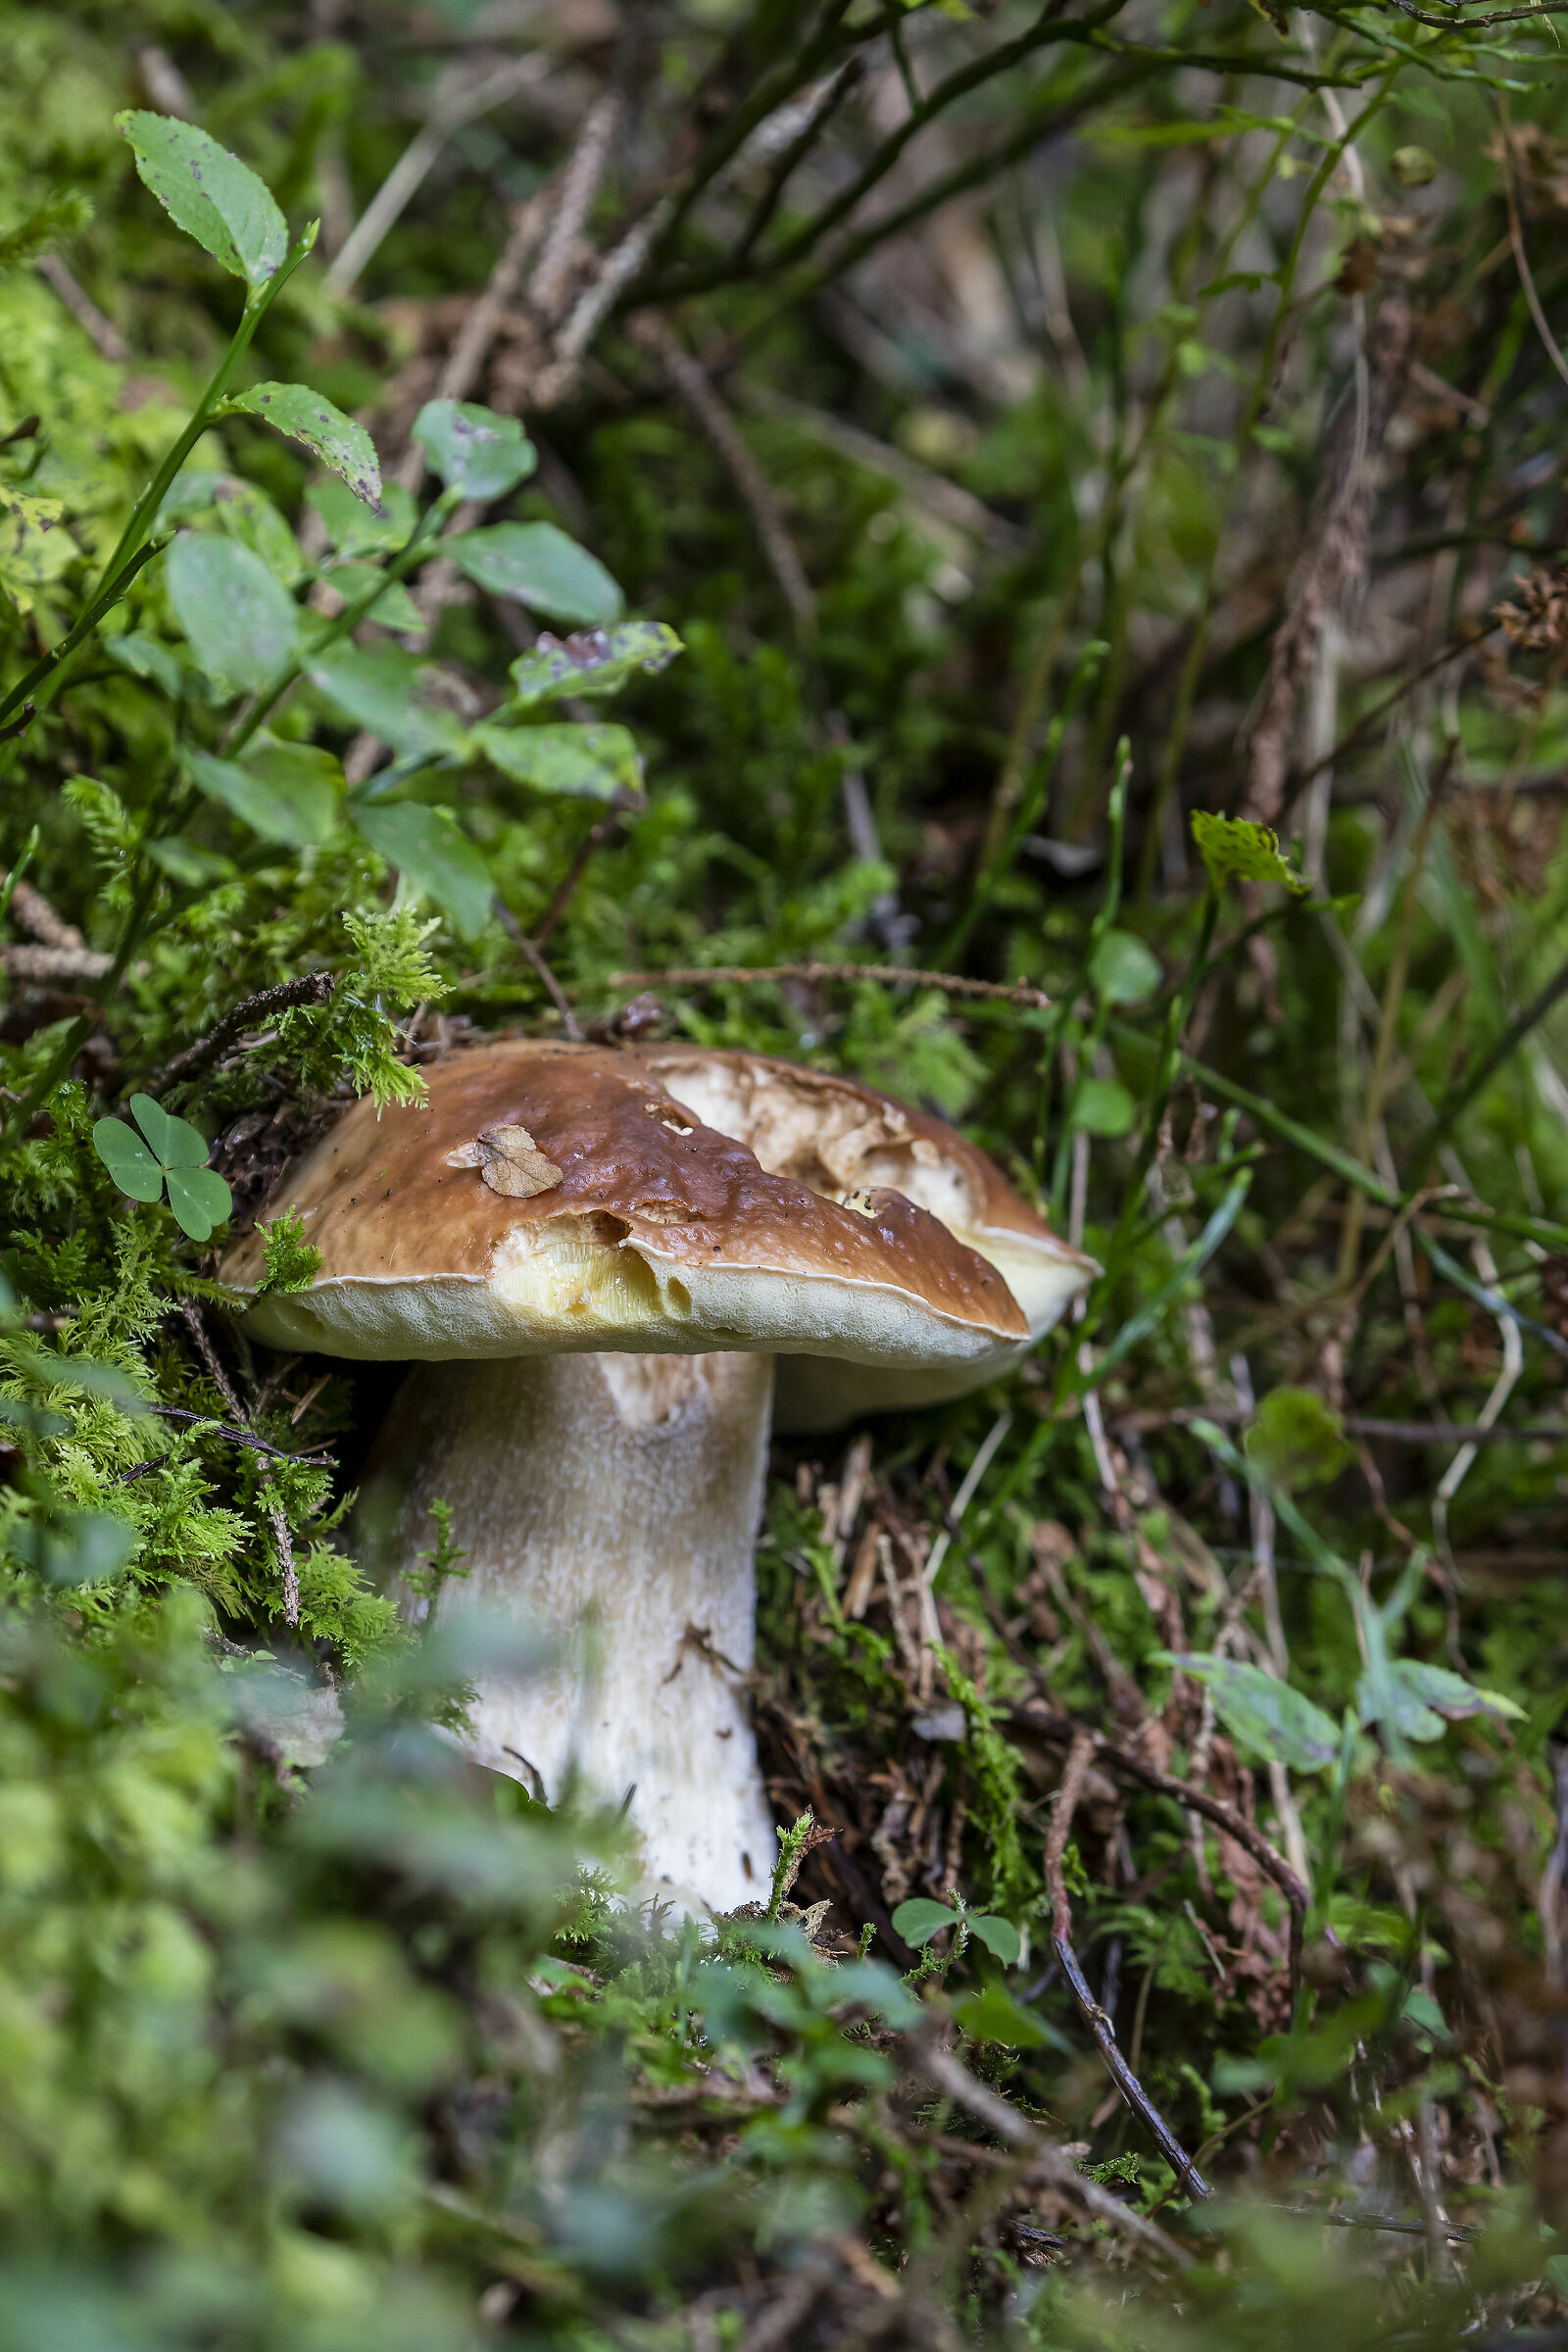 Porcino mushroom (Boletus edulis)...